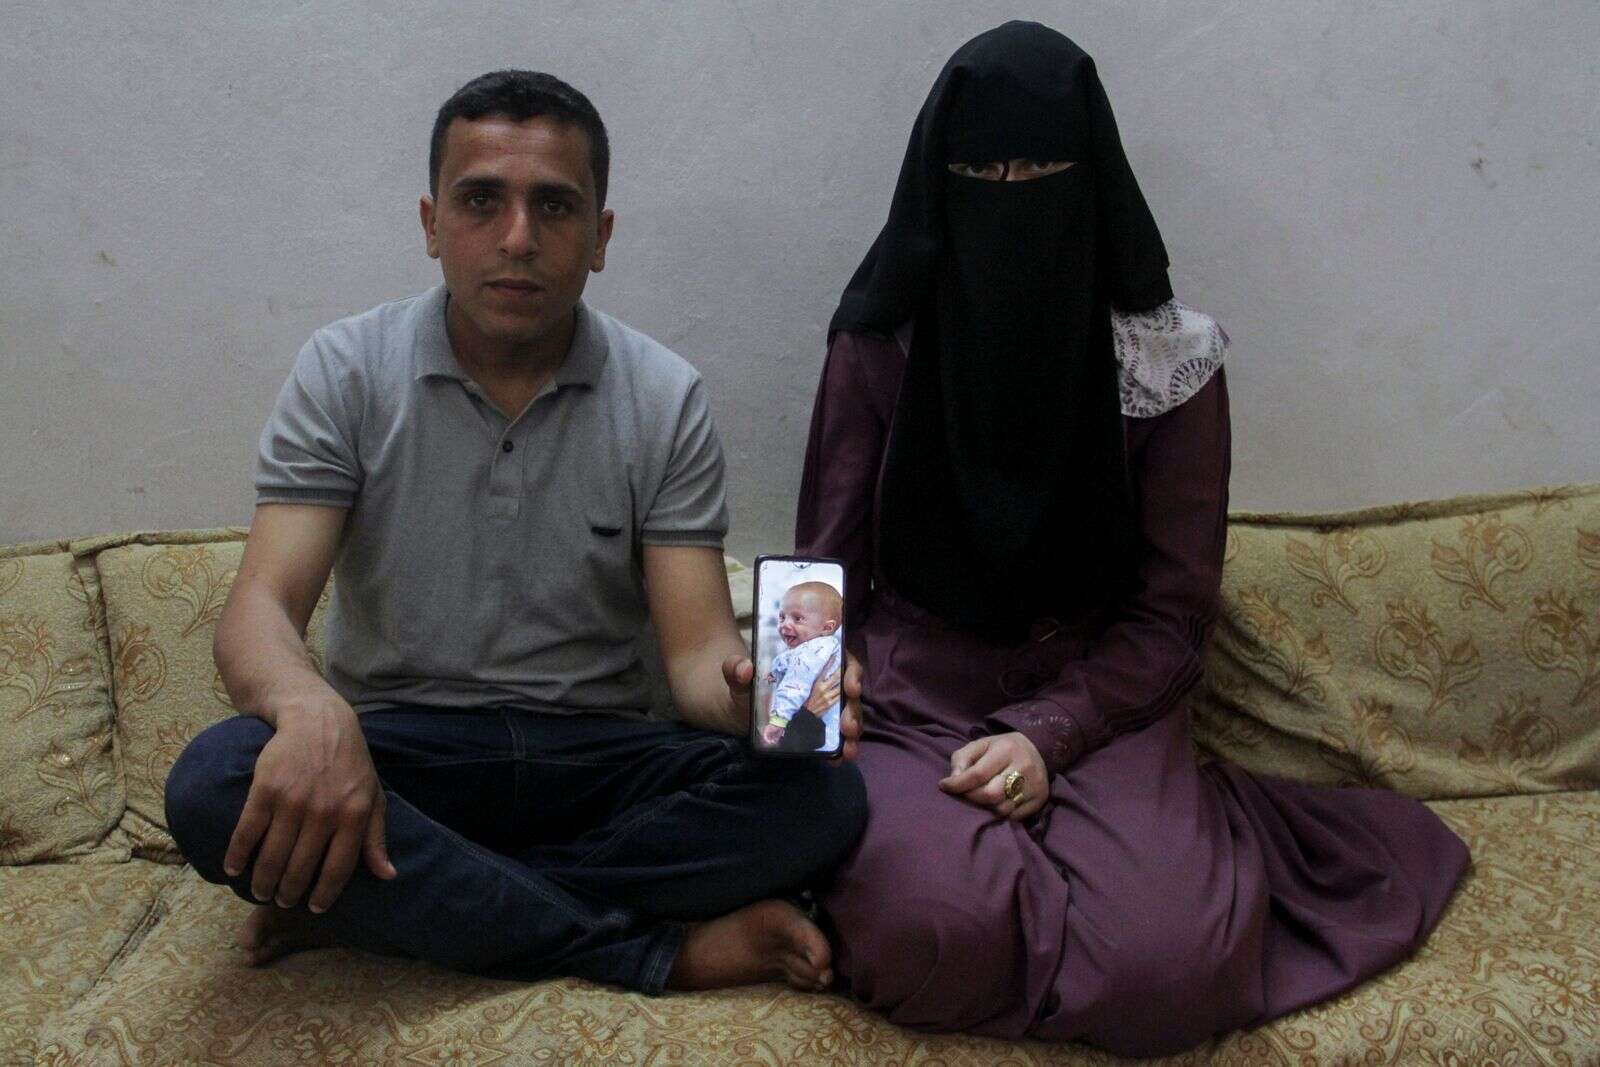 gaza war separates parents from their newborn baby